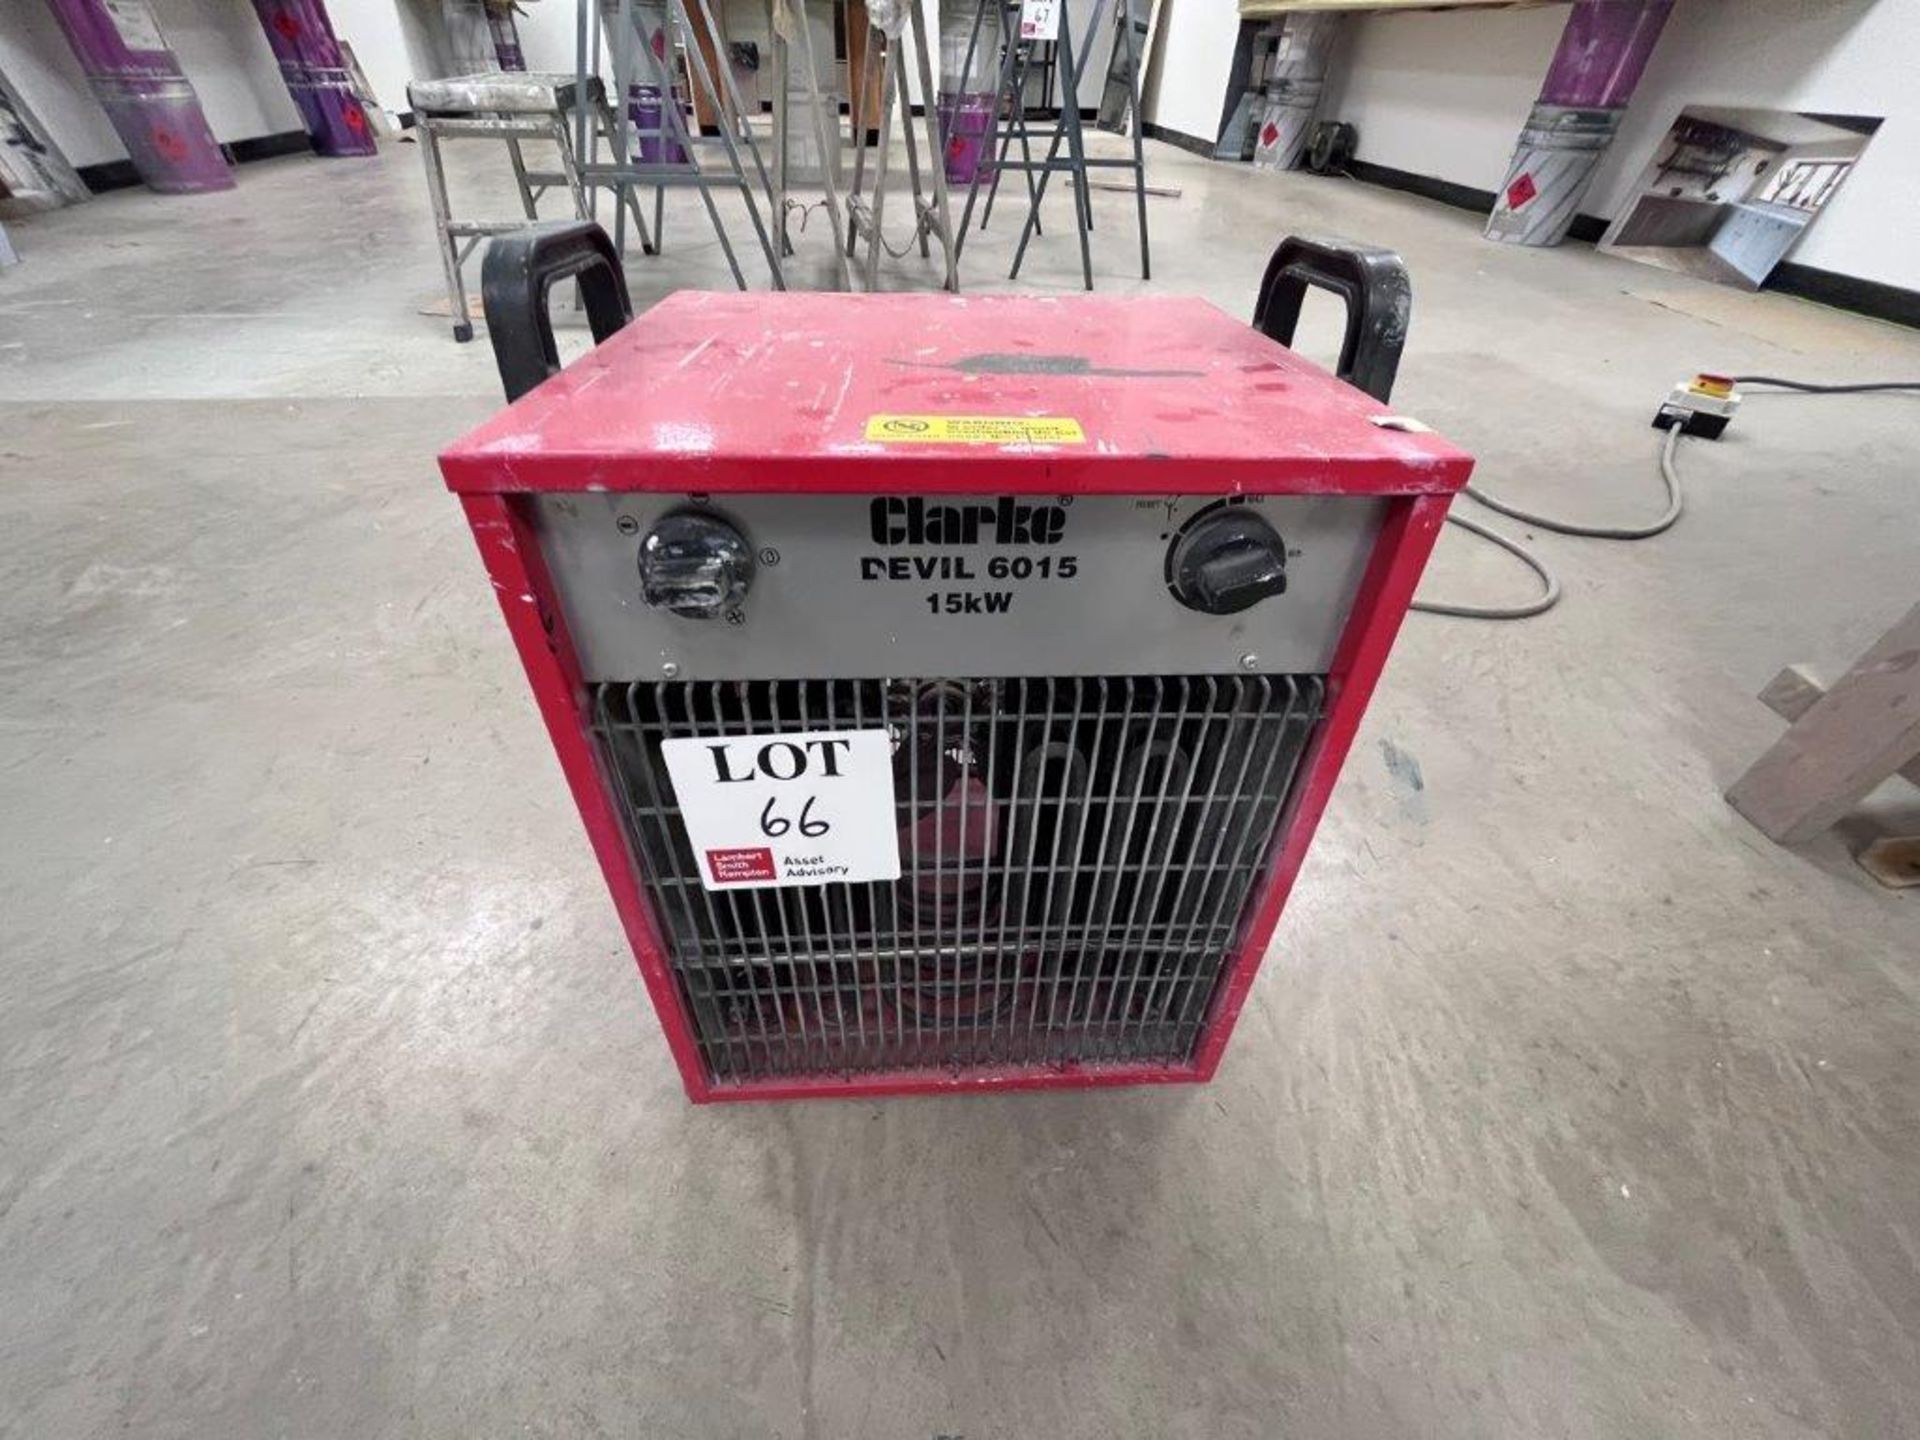 Clarke Devil 6015 15Kw electric heater